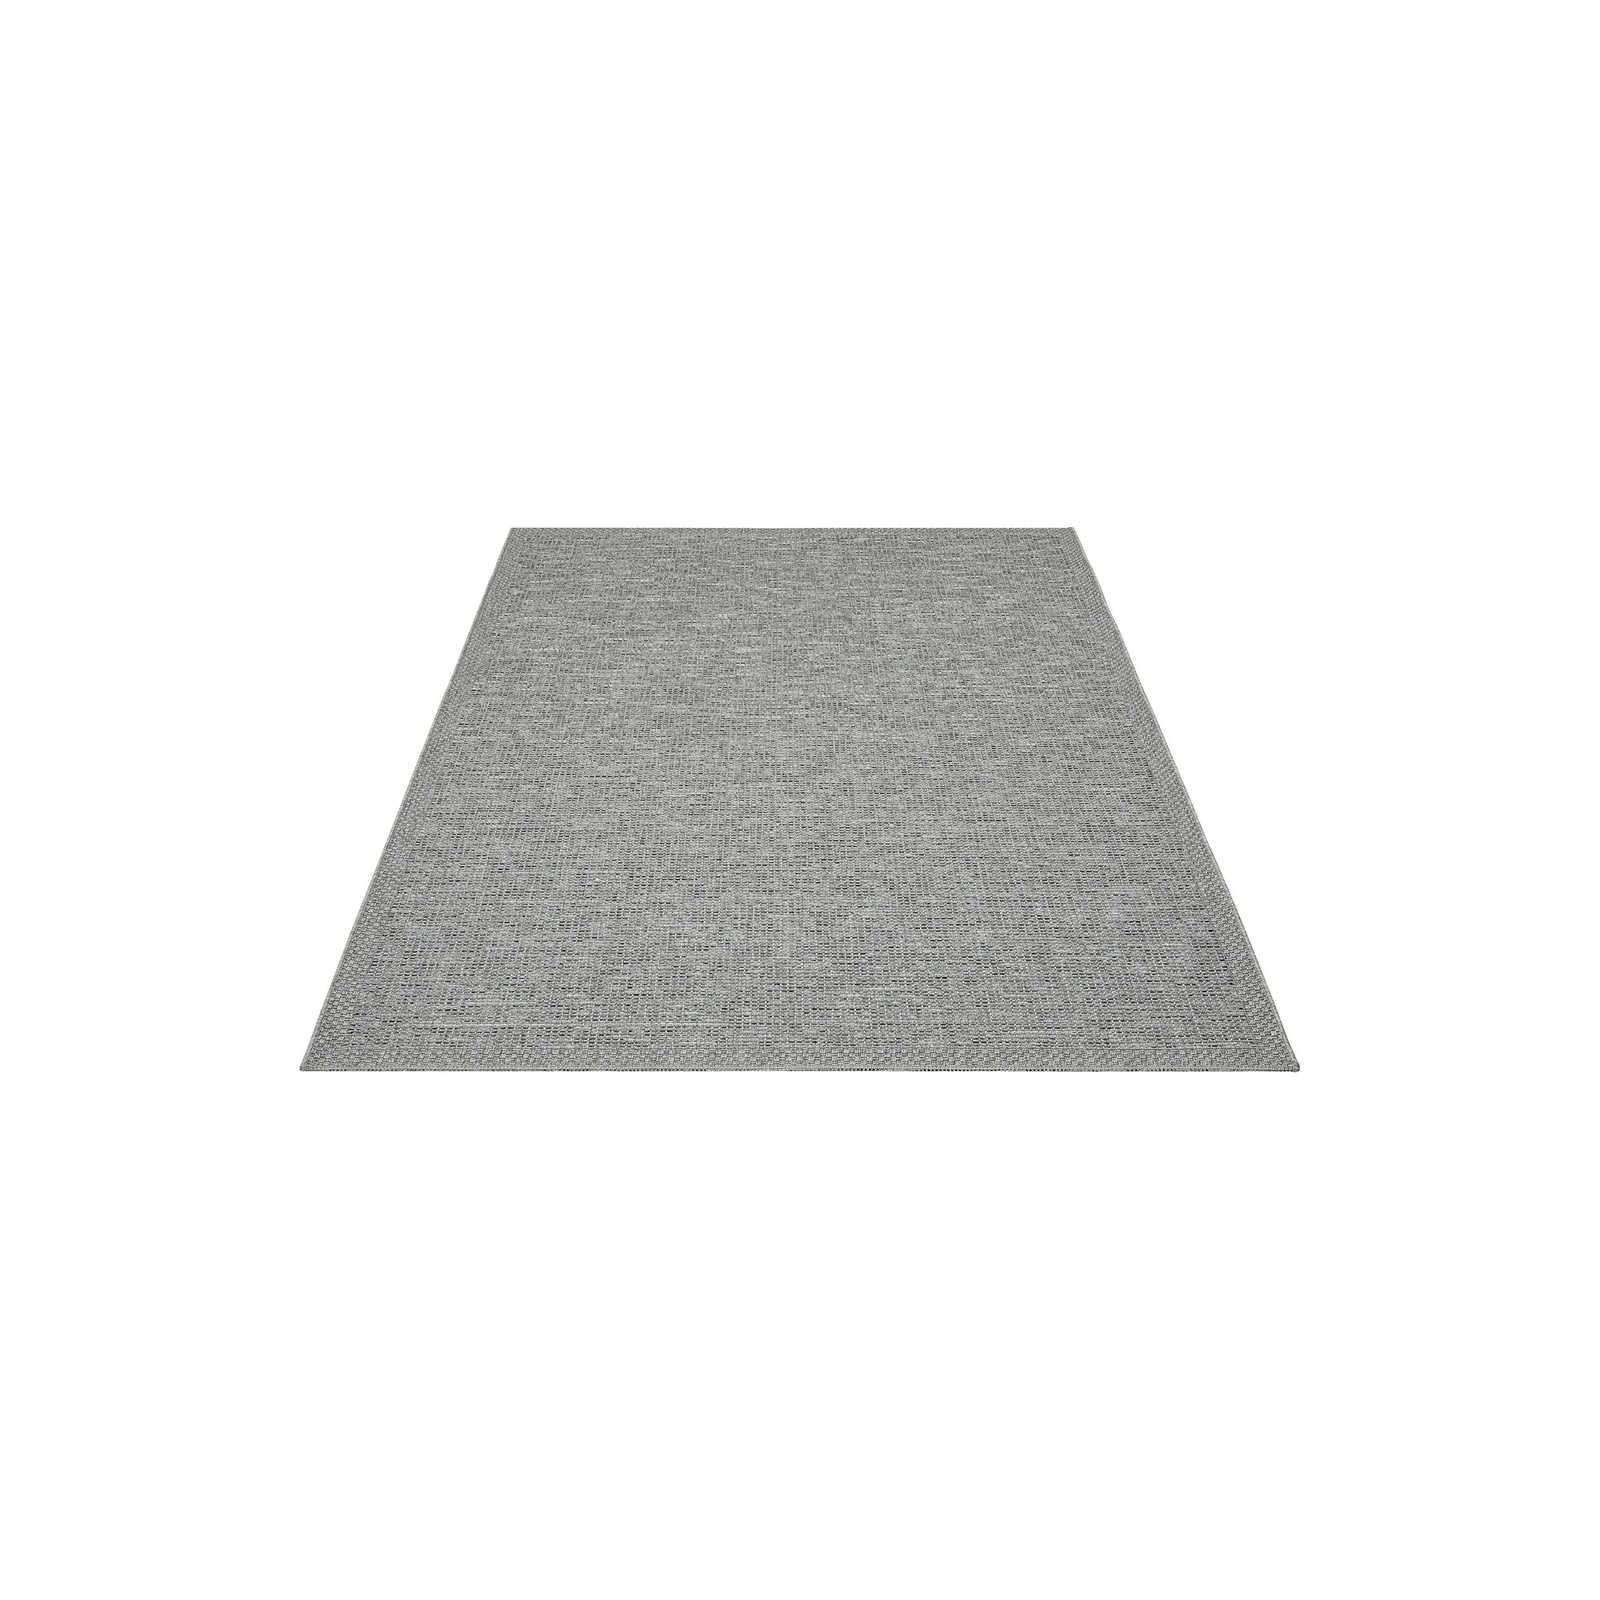 Schlichter Outdoor Teppich in Grau – 150 x 80 cm
